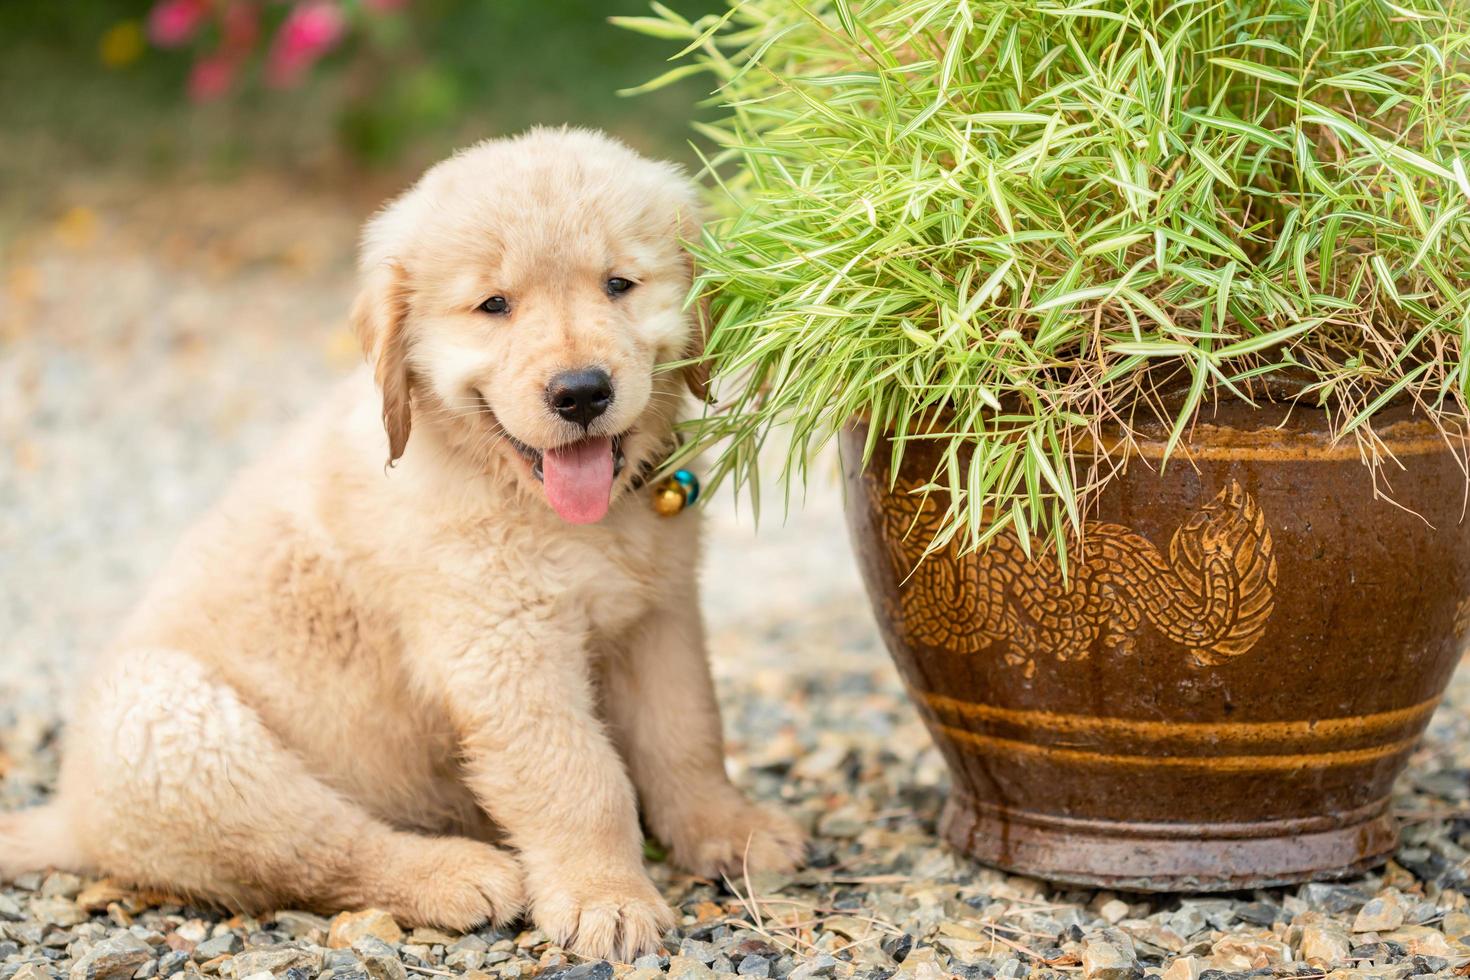 filhote de cachorro fofo golden retriever comendo pequenas plantas de bambu ou thyrsostachys siamensis aposta em vaso de jardim foto